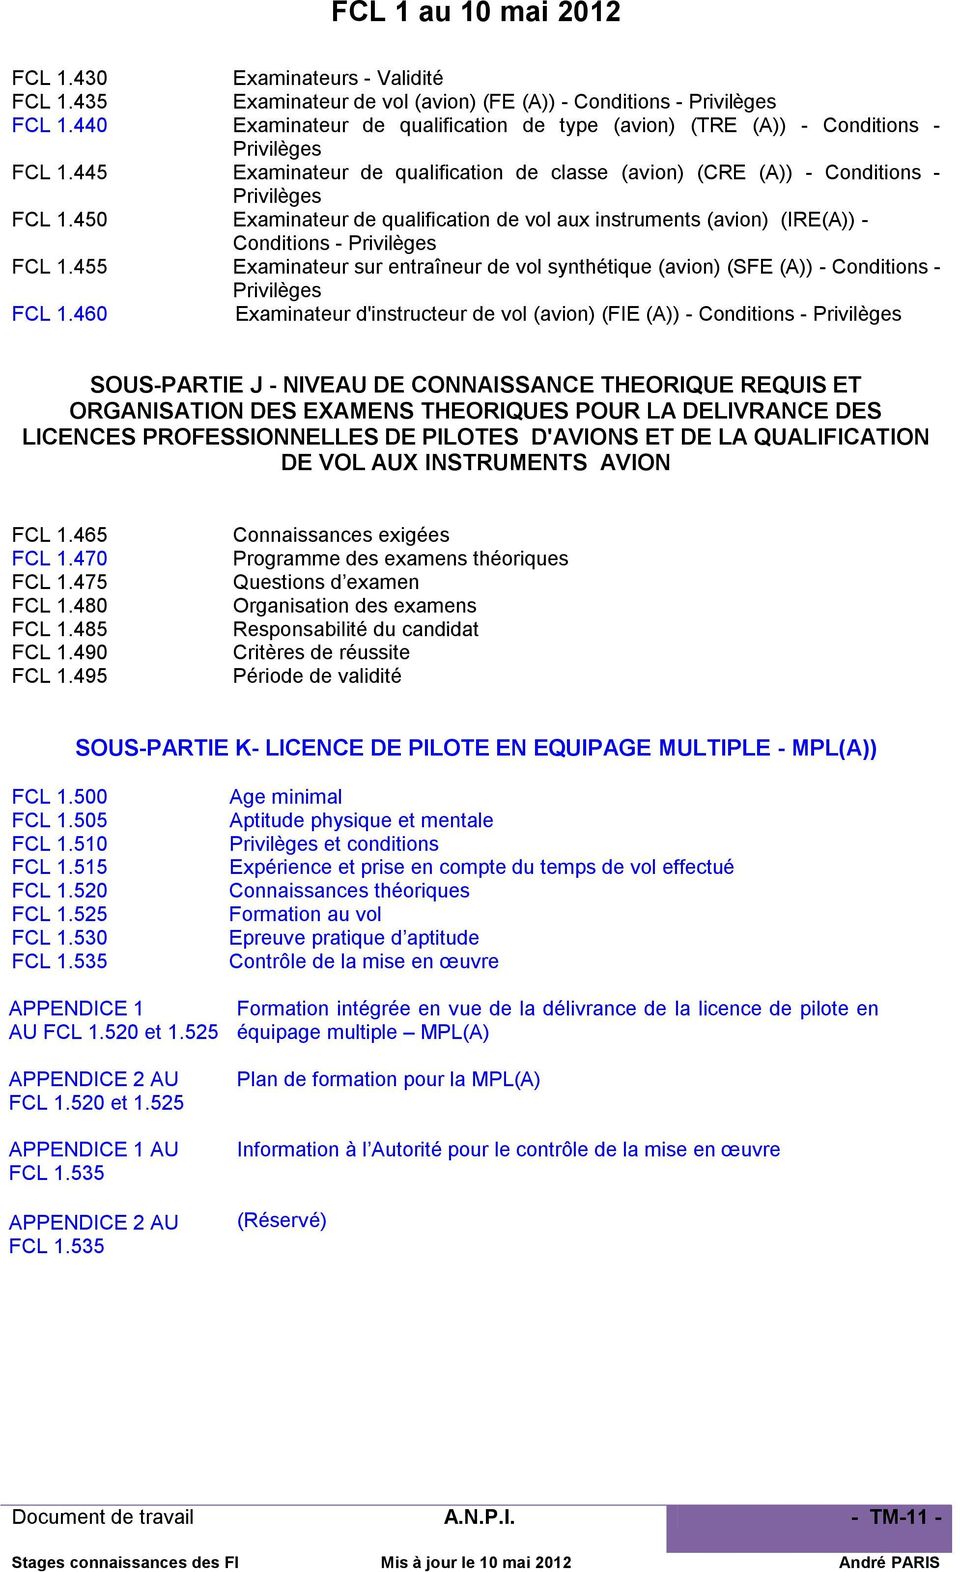 450 Examinateur de qualification de vol aux instruments (avion) (IRE(A)) - Conditions - Privilèges FCL 1.